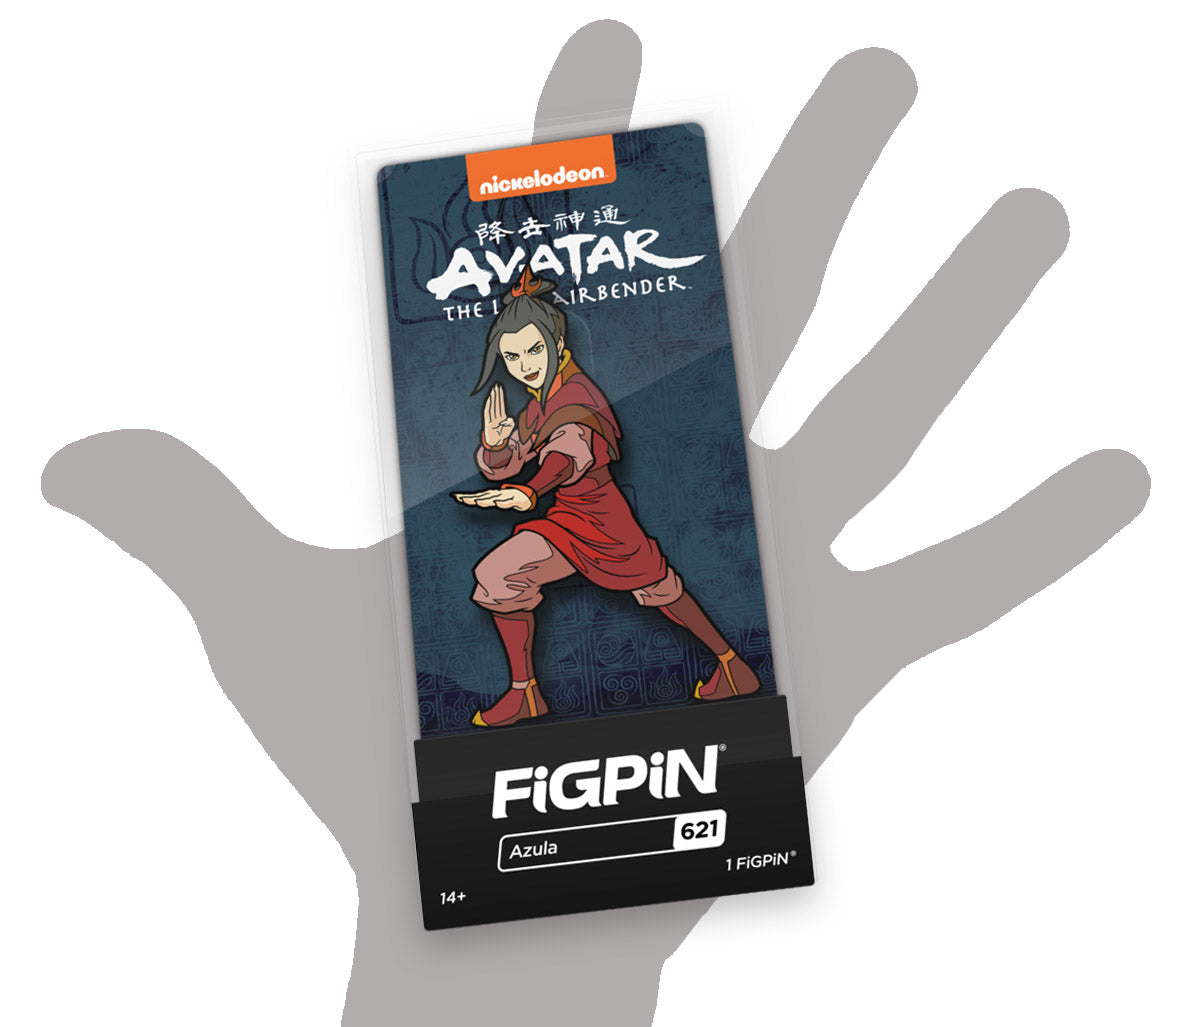 FiGPiN Azula (621) Collectable Enamel Pin MKGZ1RYCQ1 |27880|